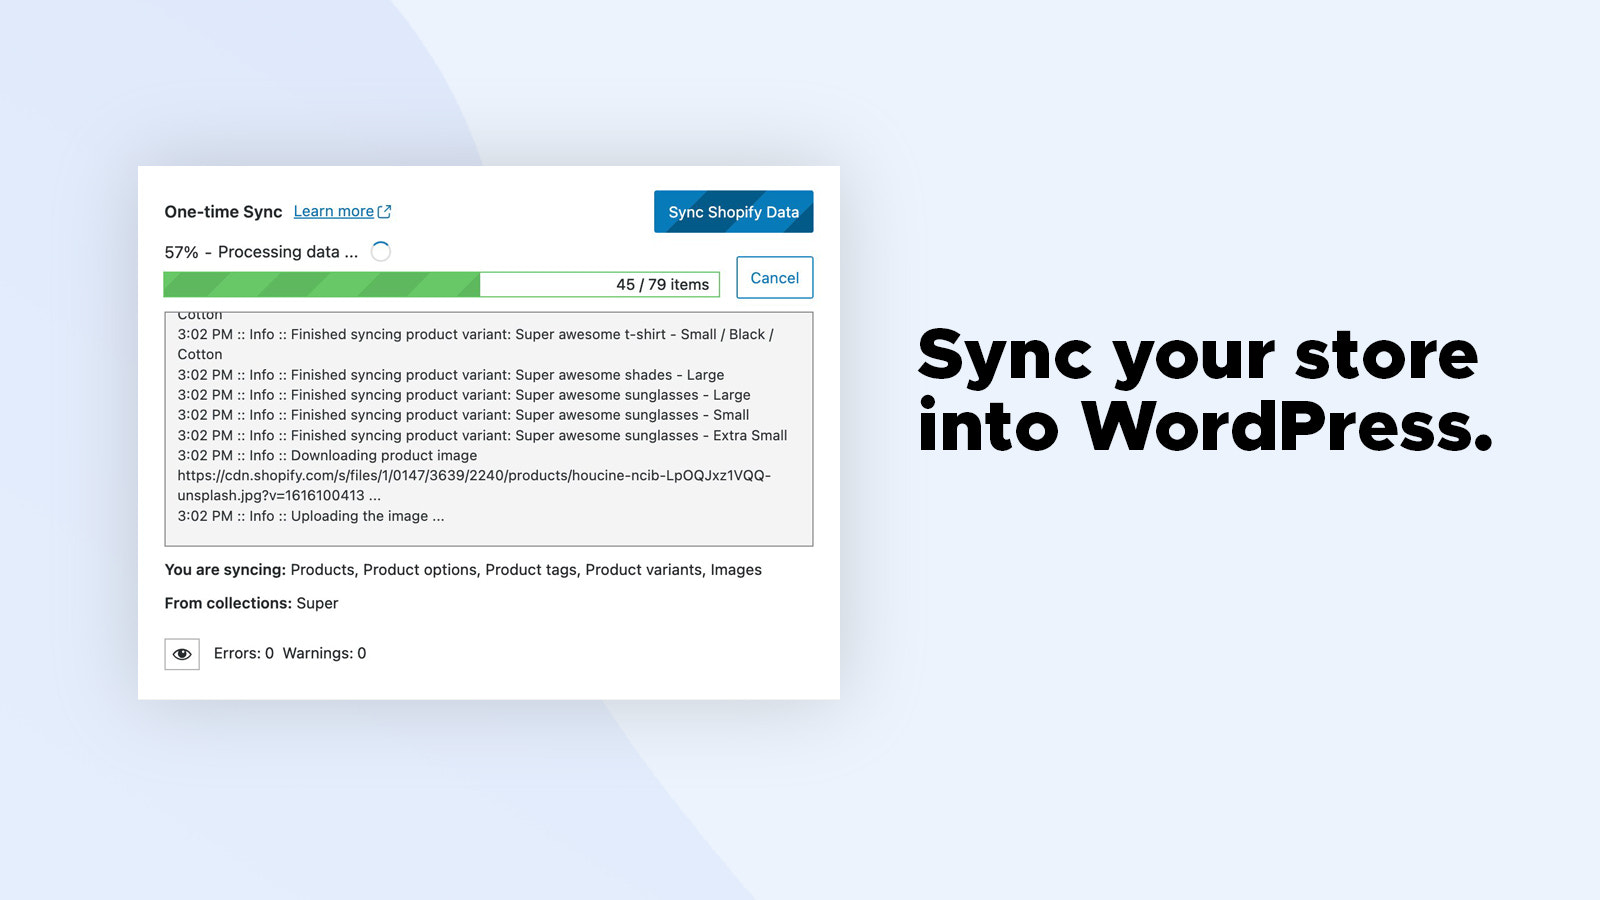 Synkroniser din butik ind i WordPress